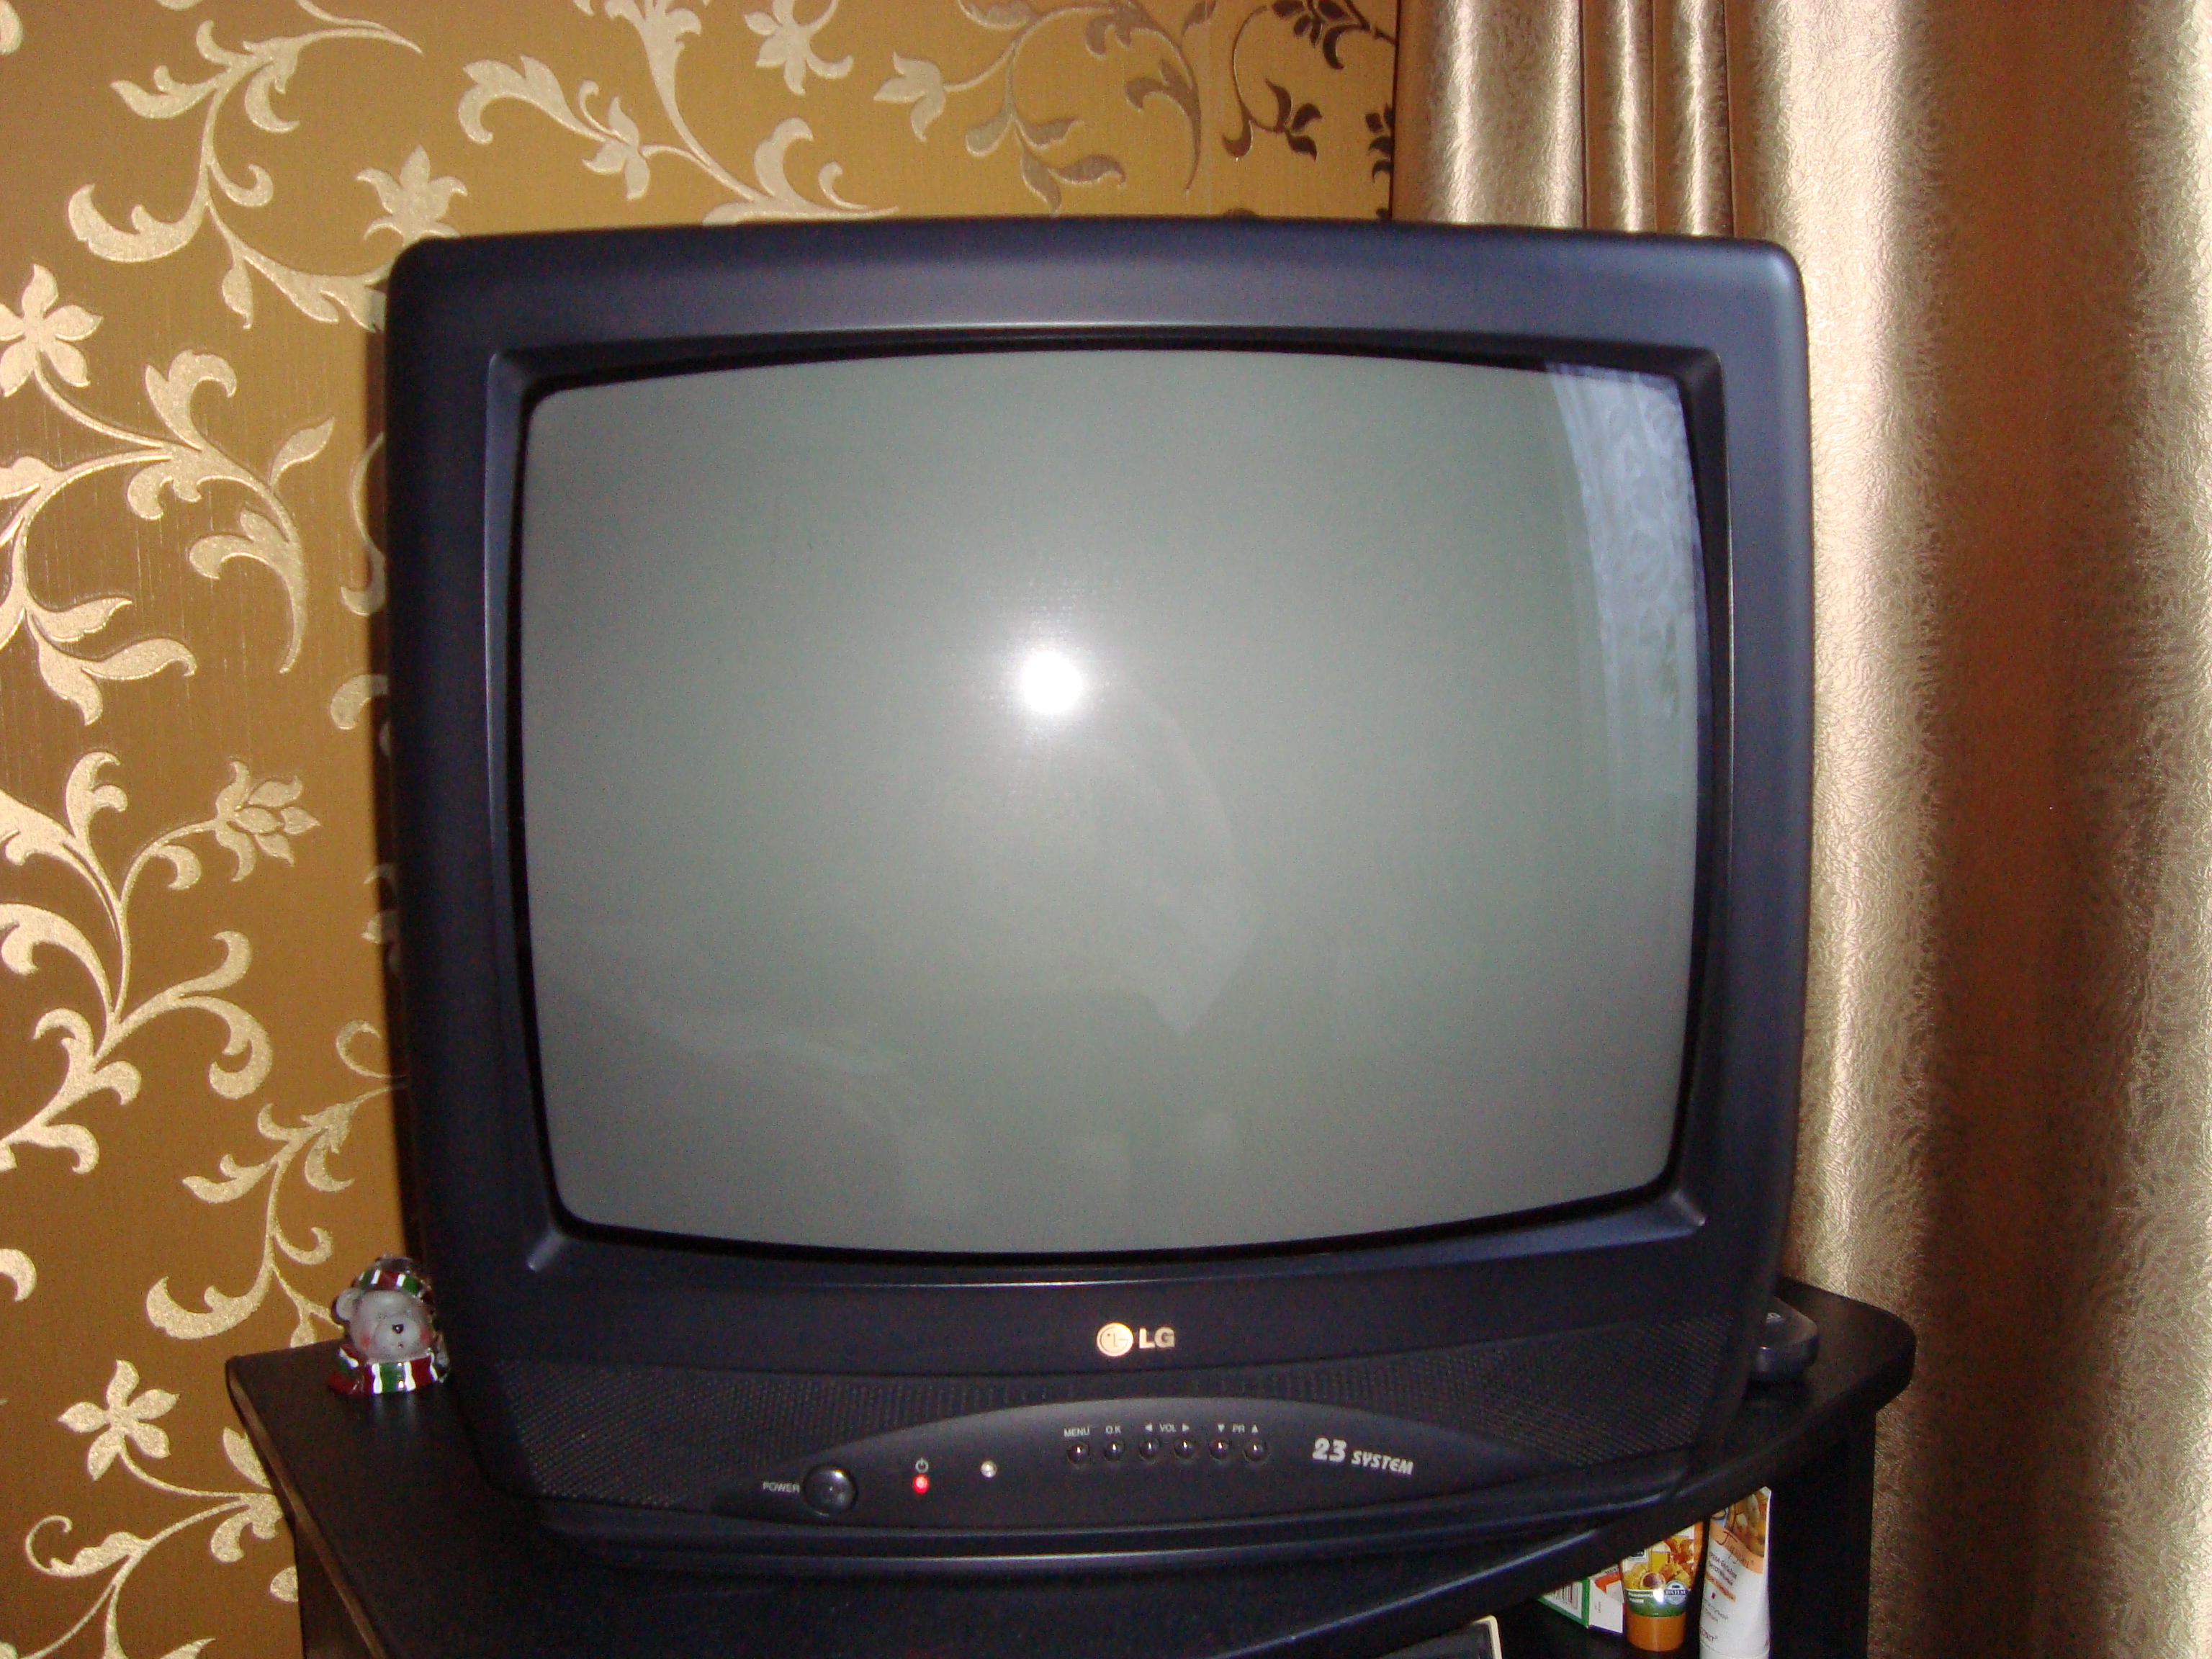 Купить телевизор в великом новгороде. LG 21 дюйм кинескопный. Телевизор LG 21 дюйм кинескопный. Телевизор LG CF-21f39. LG CF 20f30.